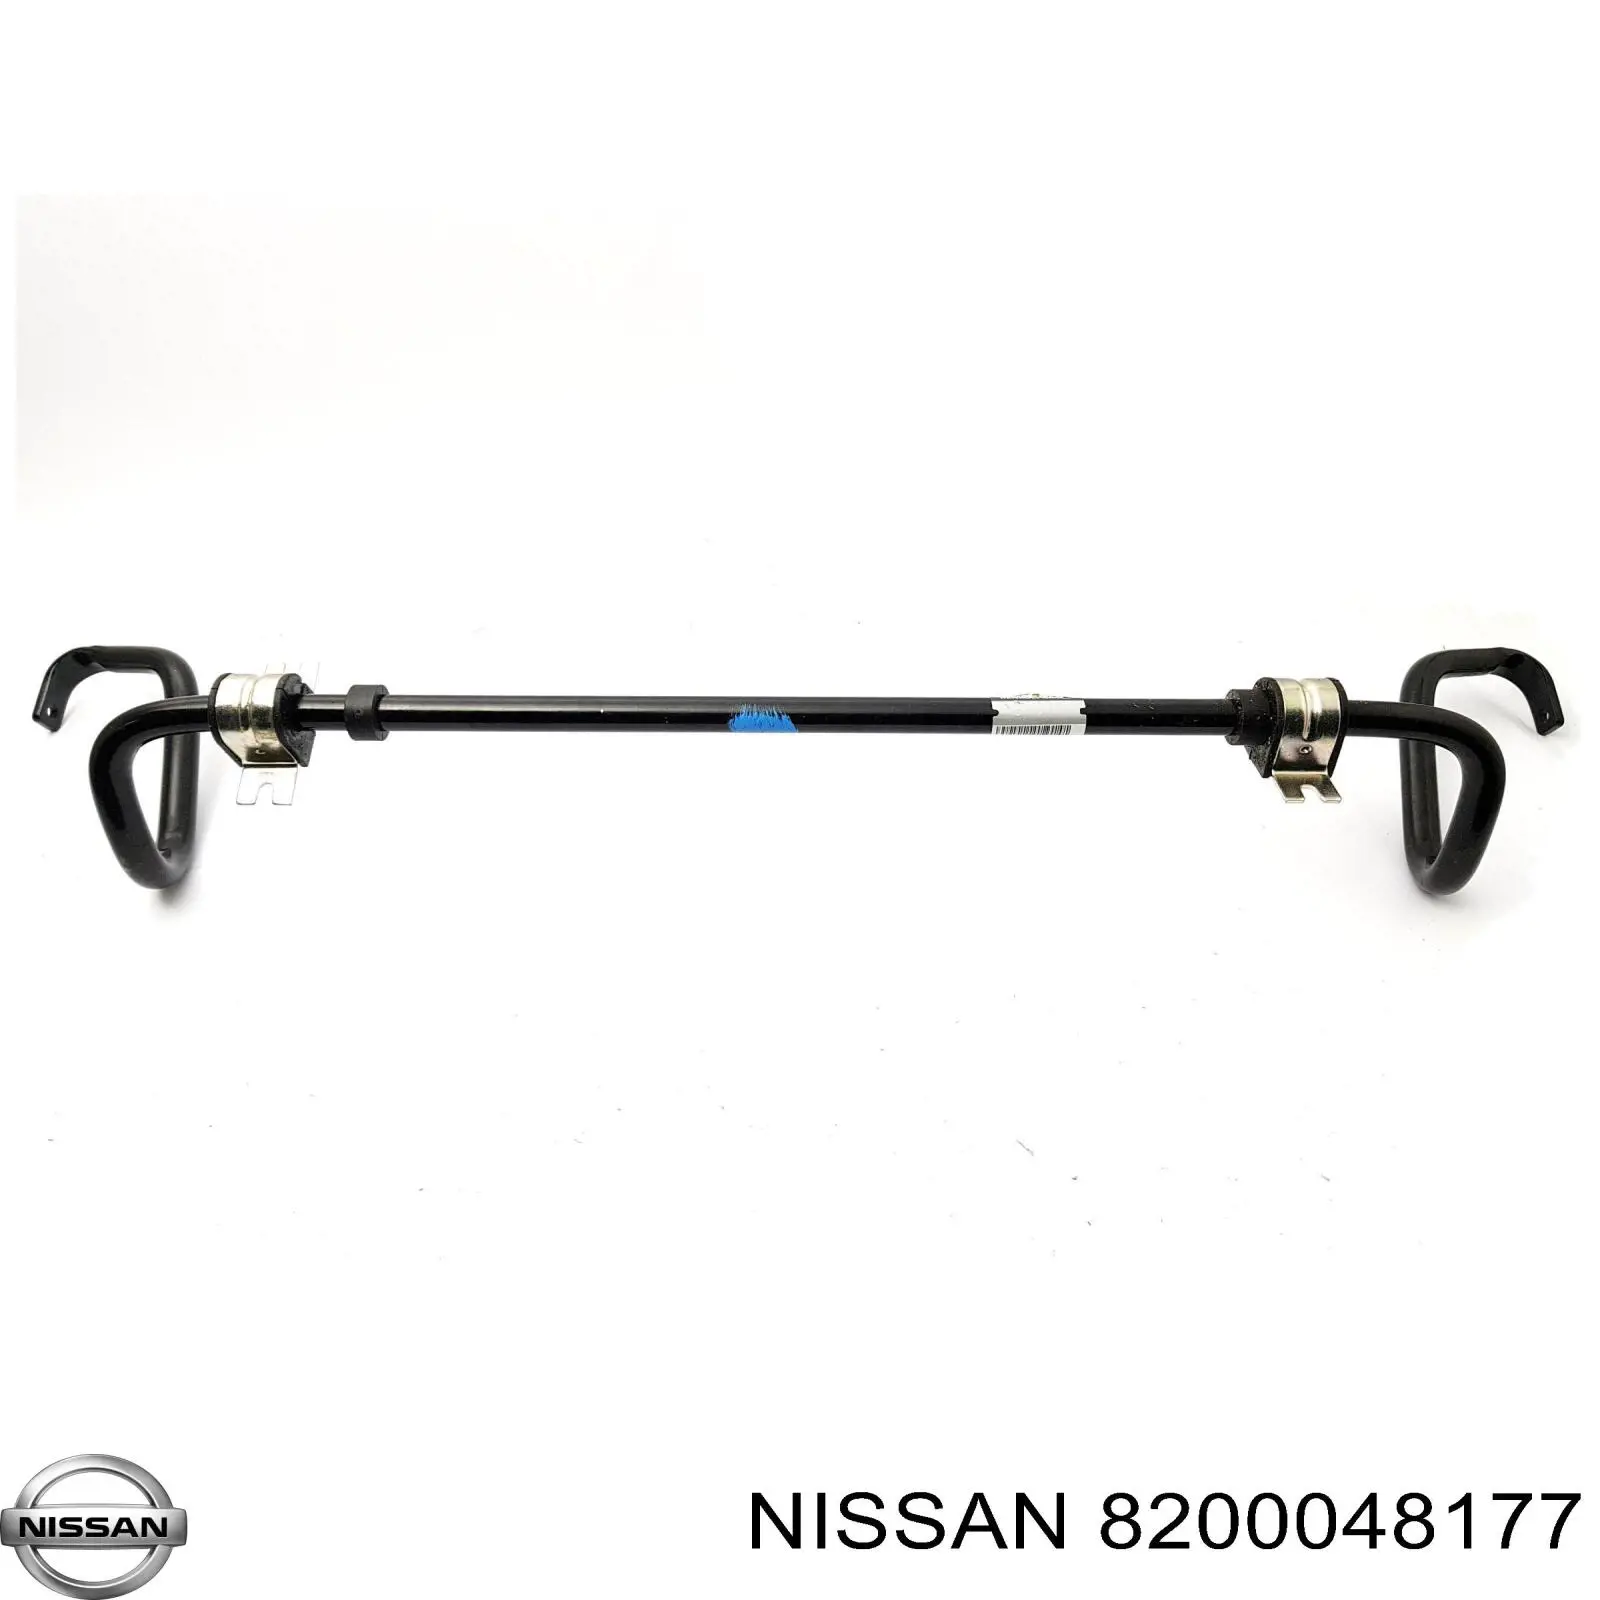 8200048177 Nissan estabilizador delantero